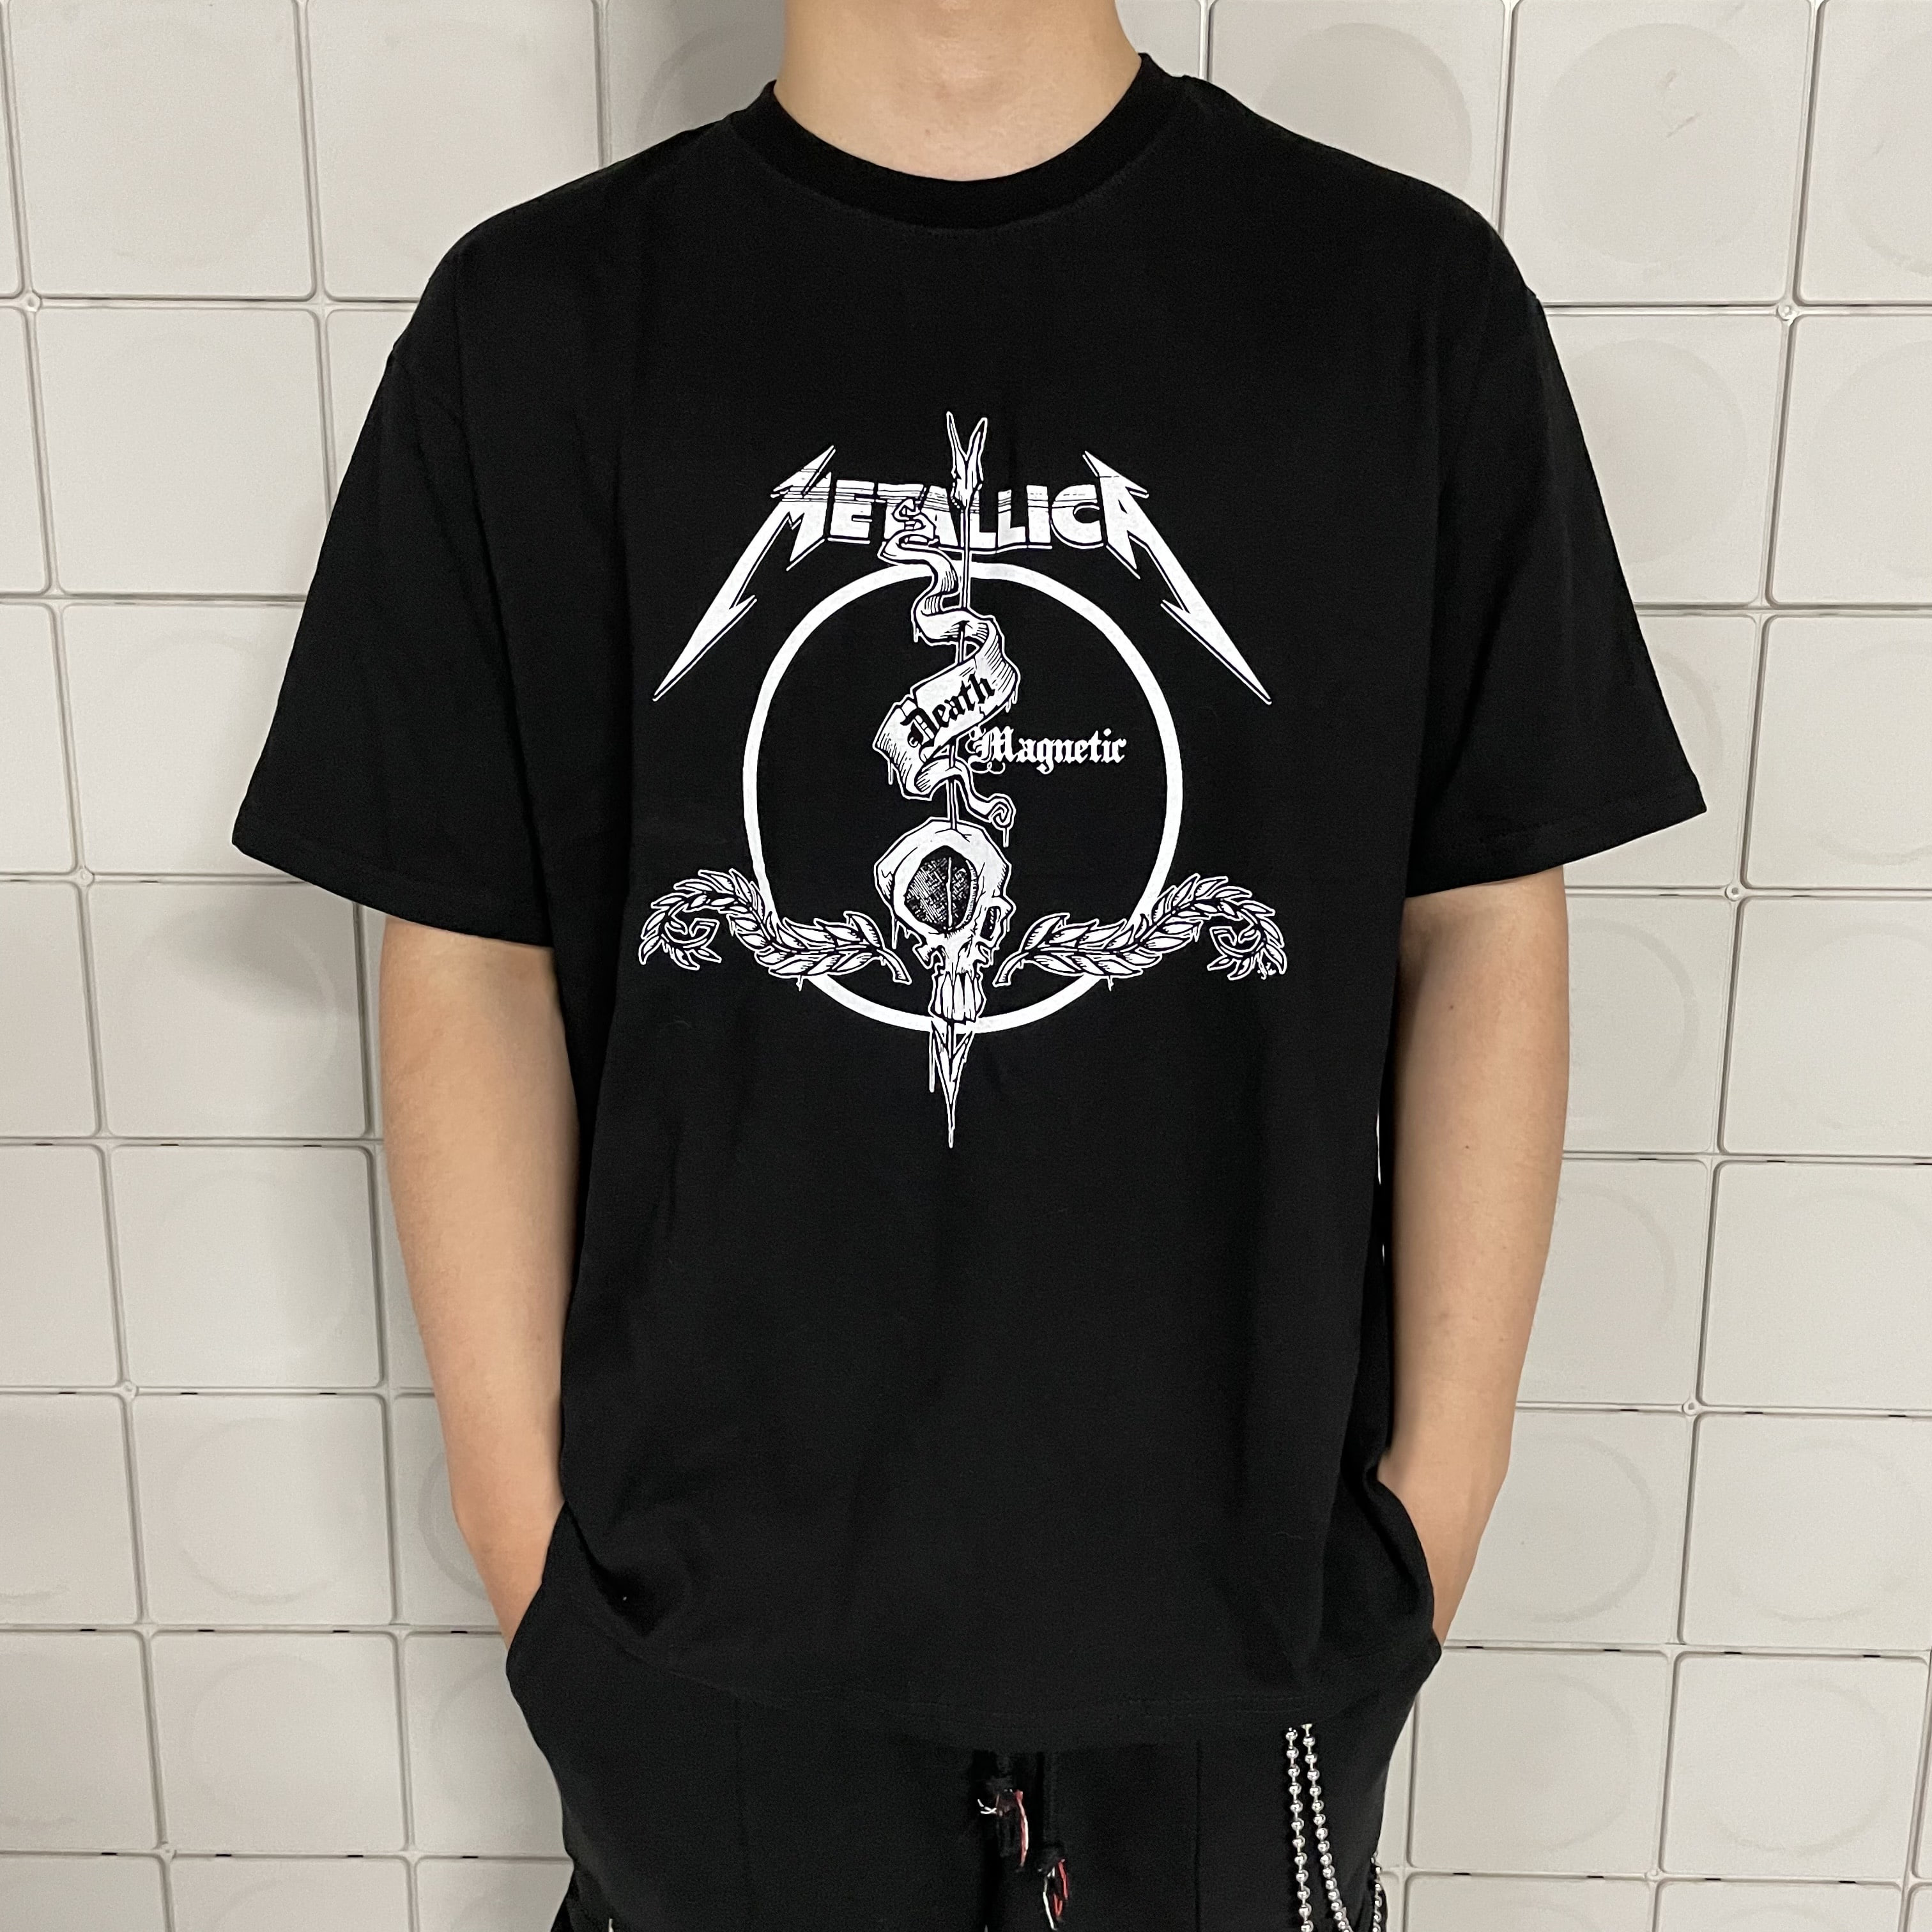 메탈리카 티셔츠 데스 프린팅 반팔 오버핏 락 ACDC (2color) (남녀공용)